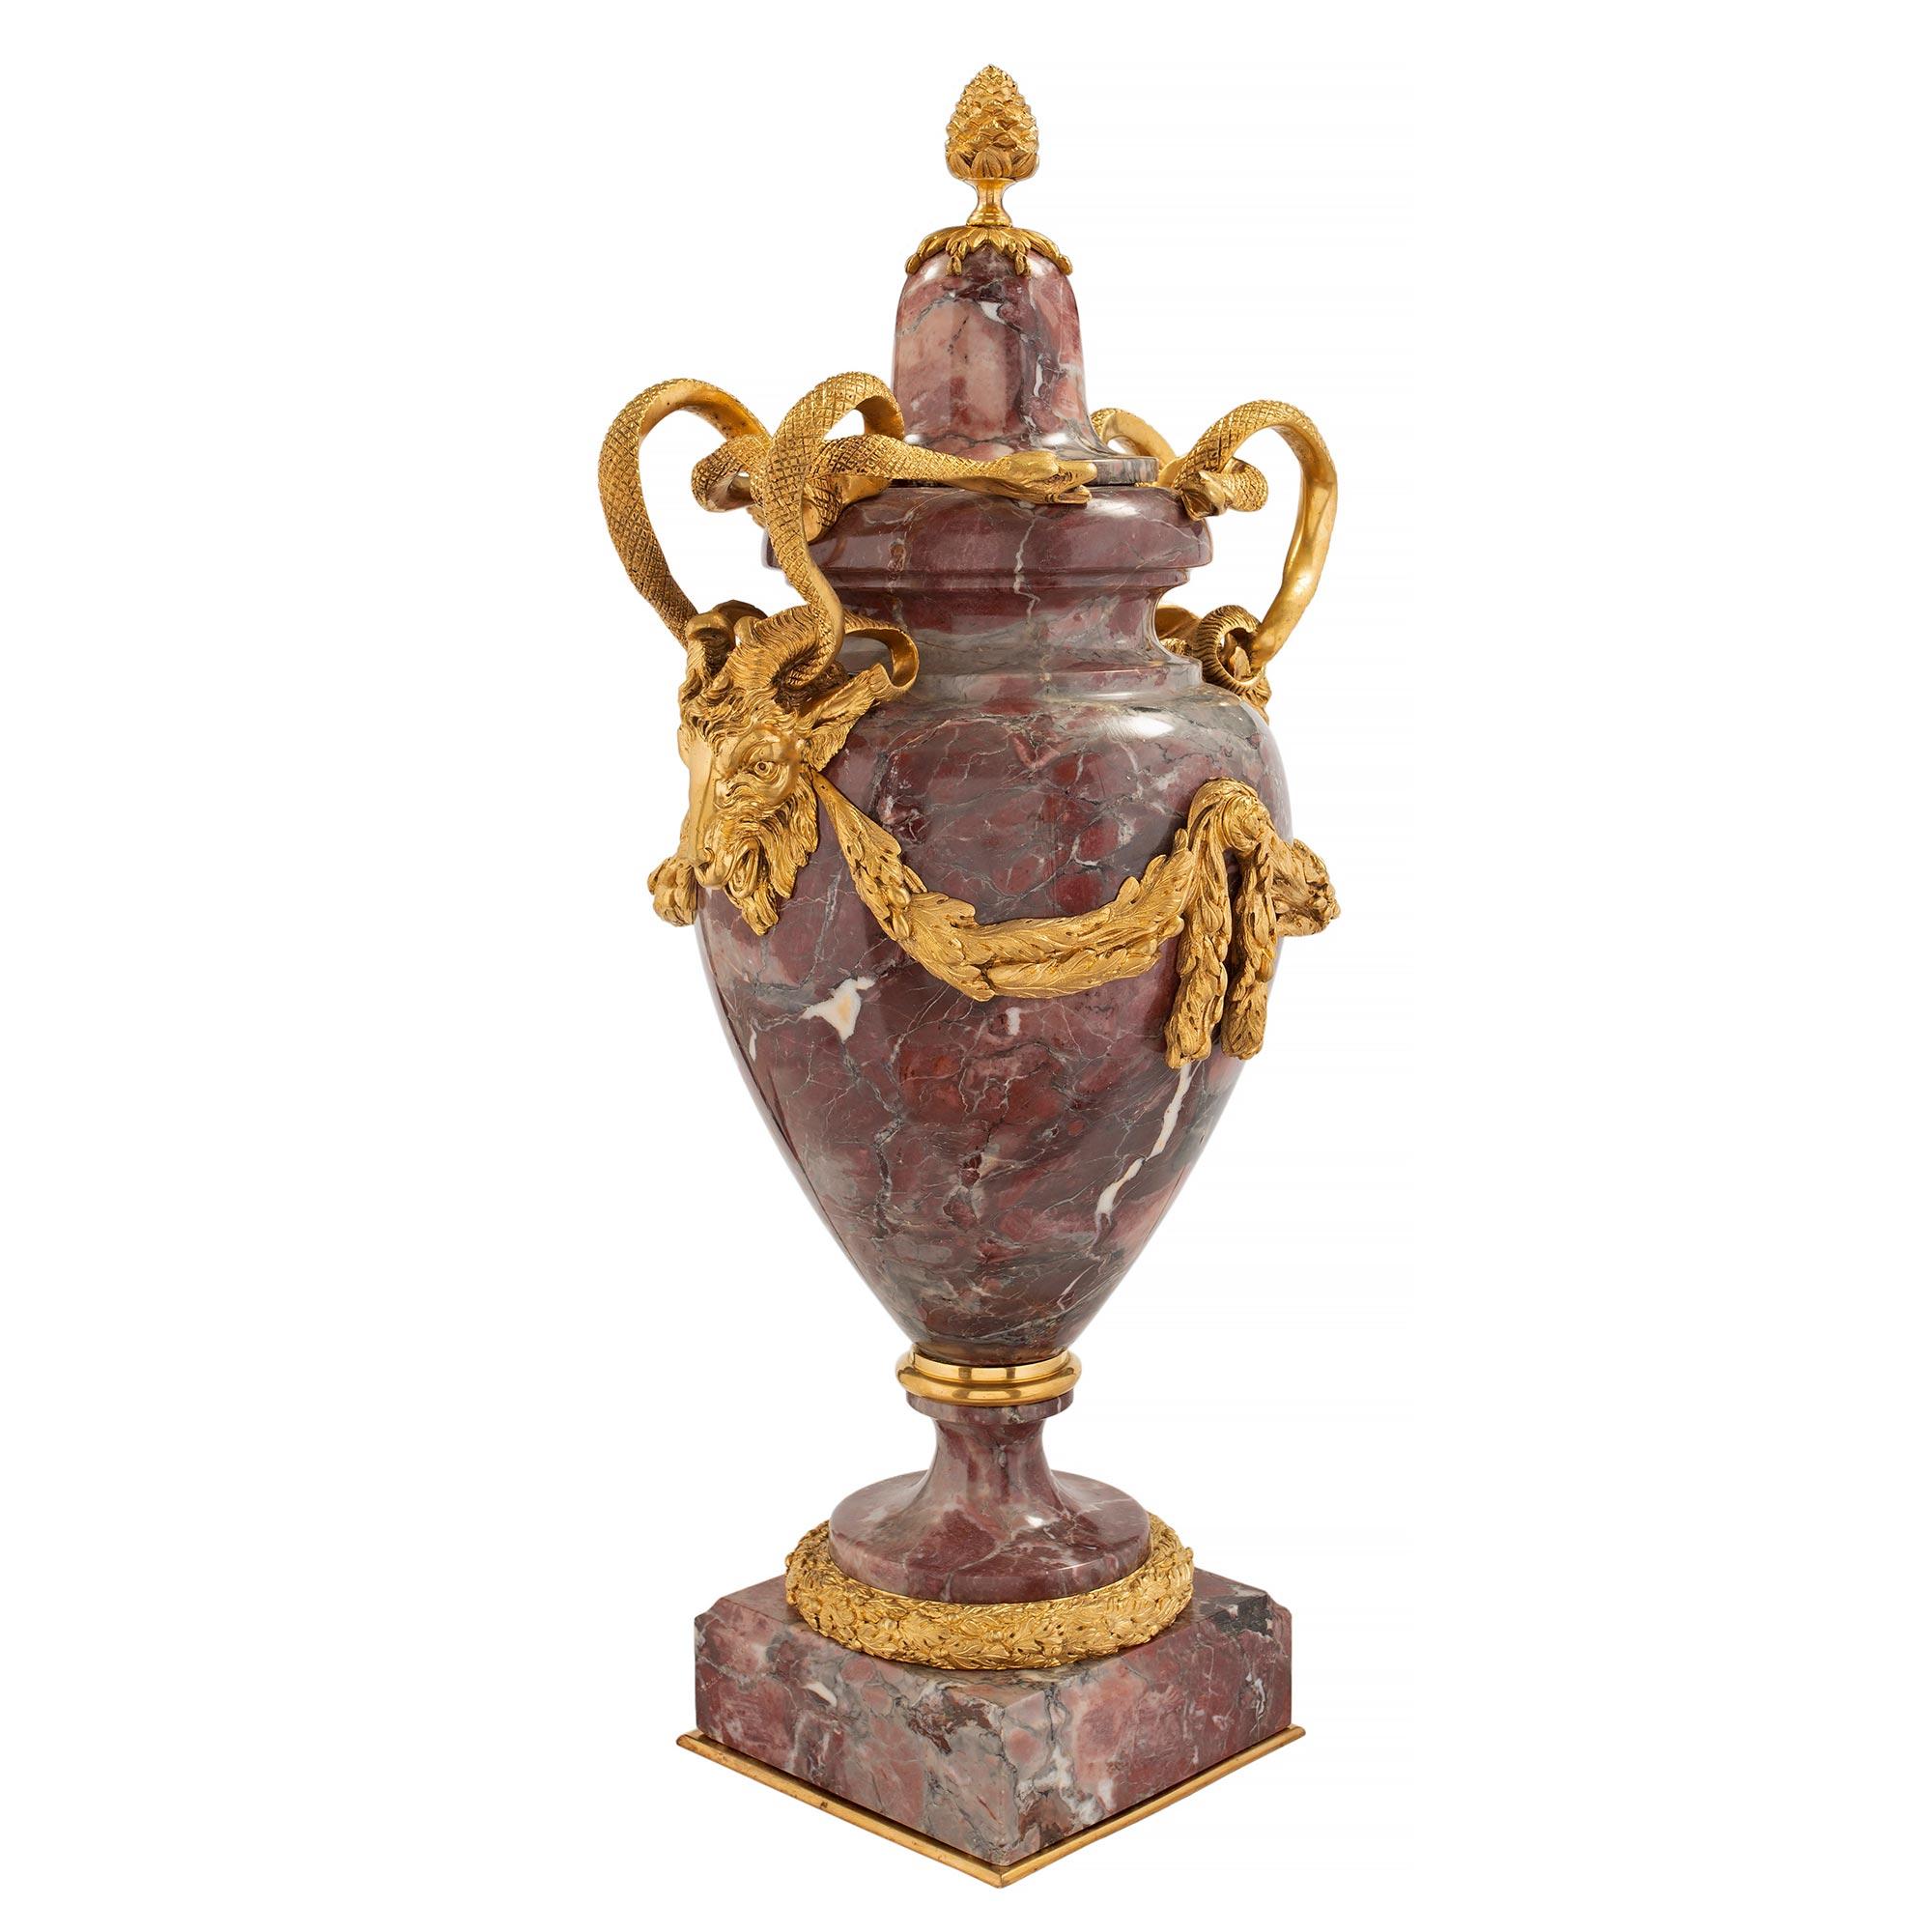 Paire d'urnes à couvercle en marbre Brèche Violette et bronze doré, de style Louis XVI, datant du milieu du XIXe siècle, très impressionnantes et de grande taille. Chaque urne est surélevée par une épaisse base carrée mouchetée avec un fin filet de